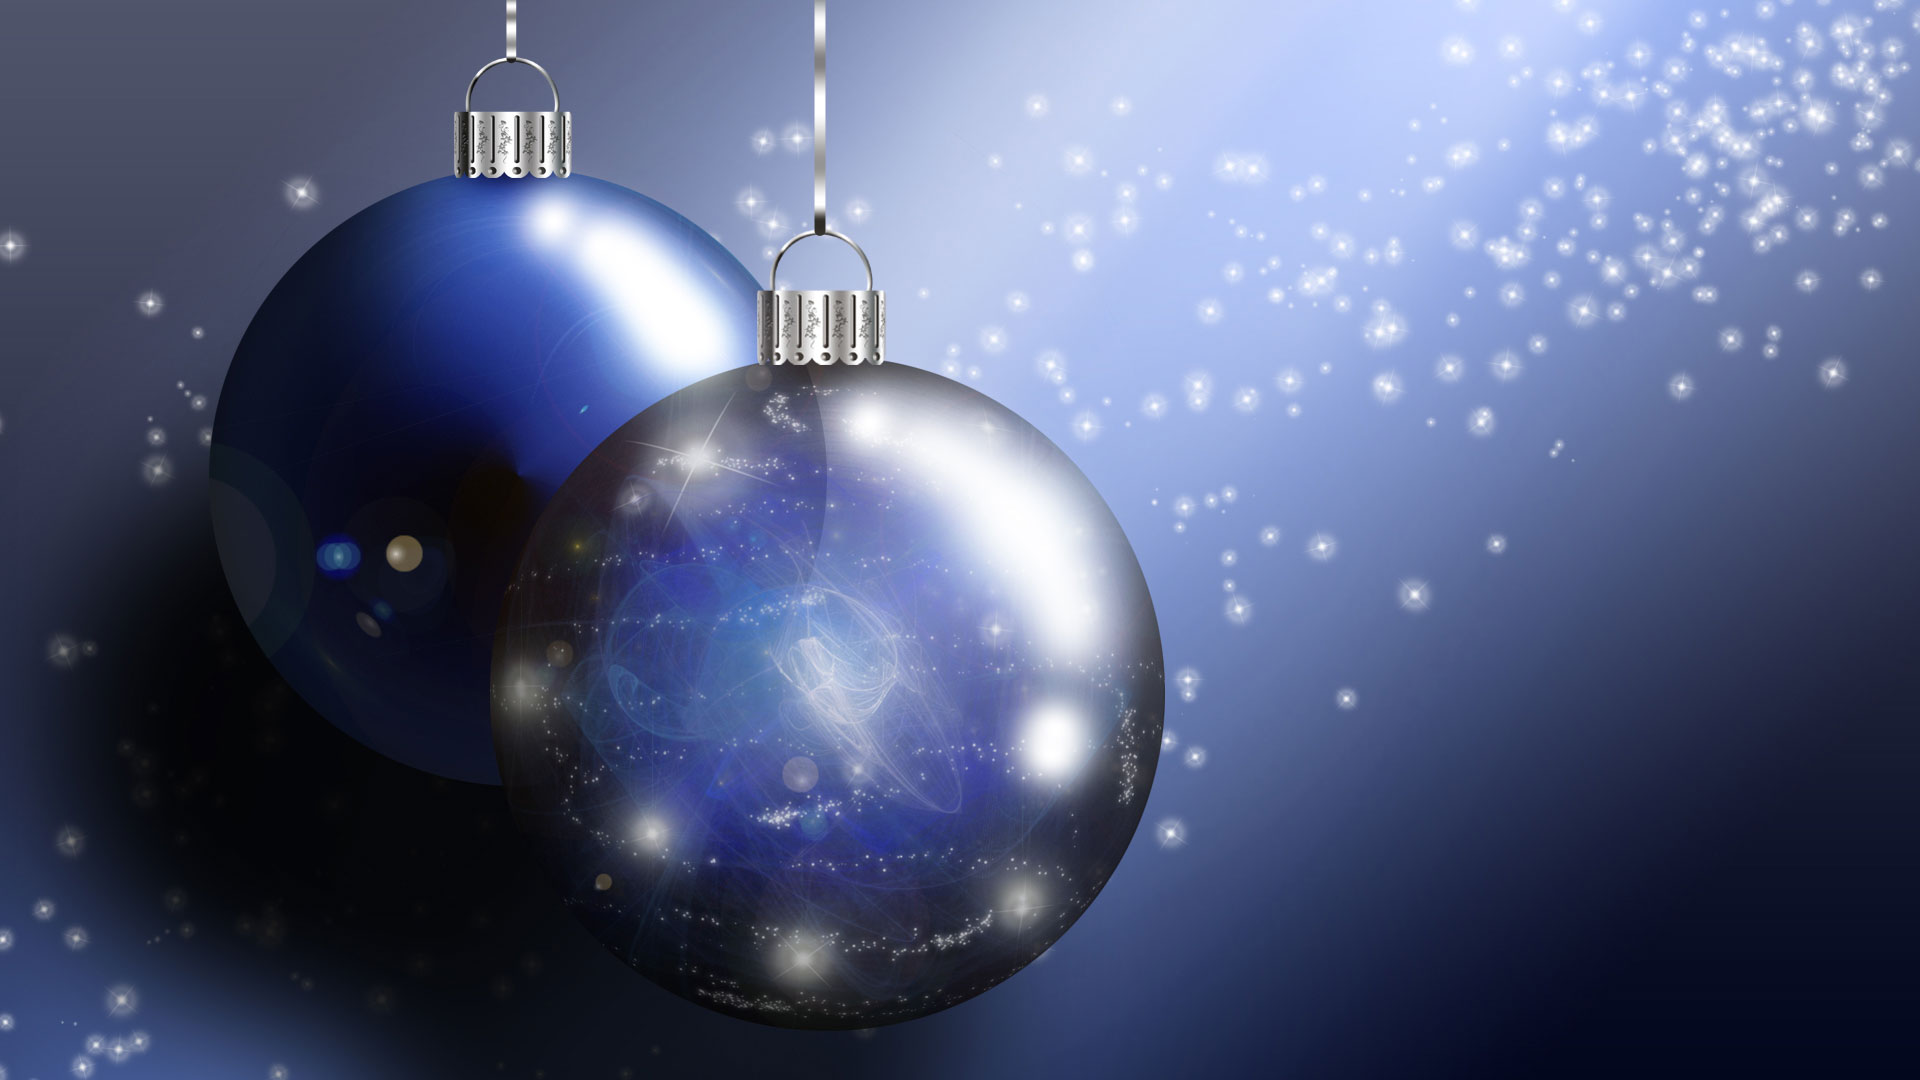 ornament tapete,weihnachtsschmuck,blau,kugel,himmel,weihnachtsdekoration